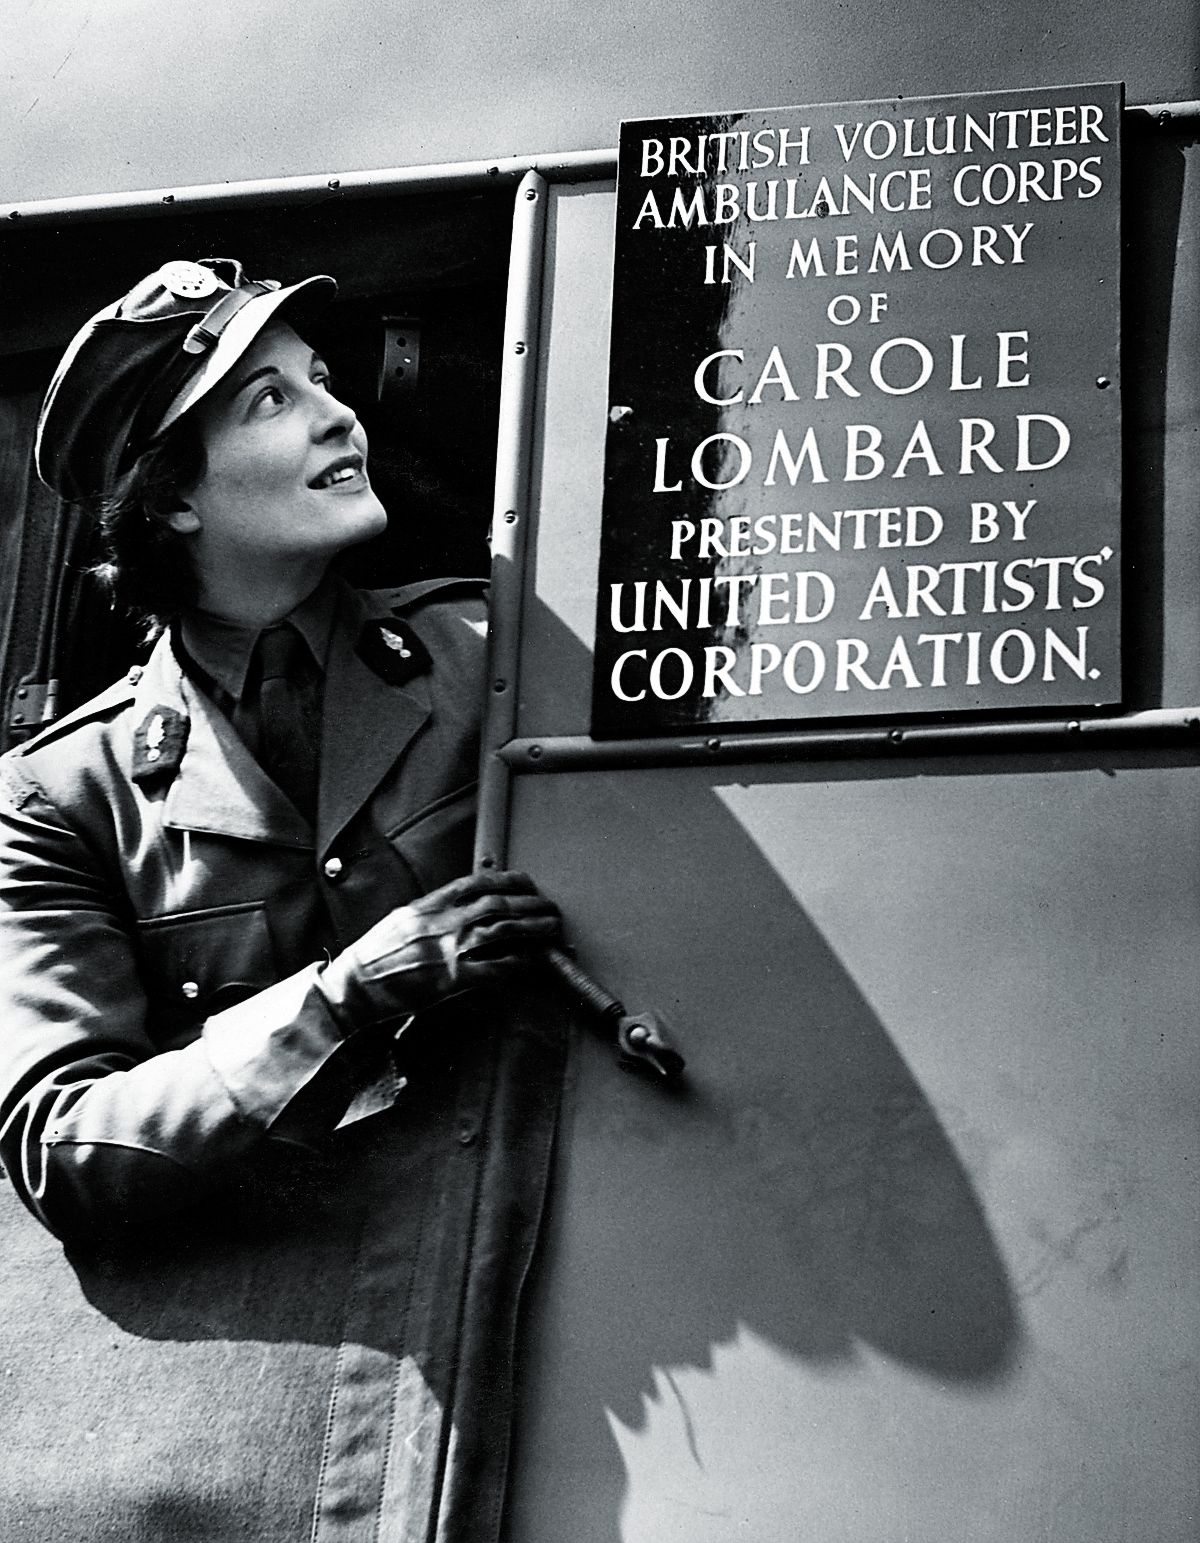 В знак признательности United Artists подарили британскому добровольческому корпусу скорой помощи машину скорой помощи в память о Кэрол Ломбард